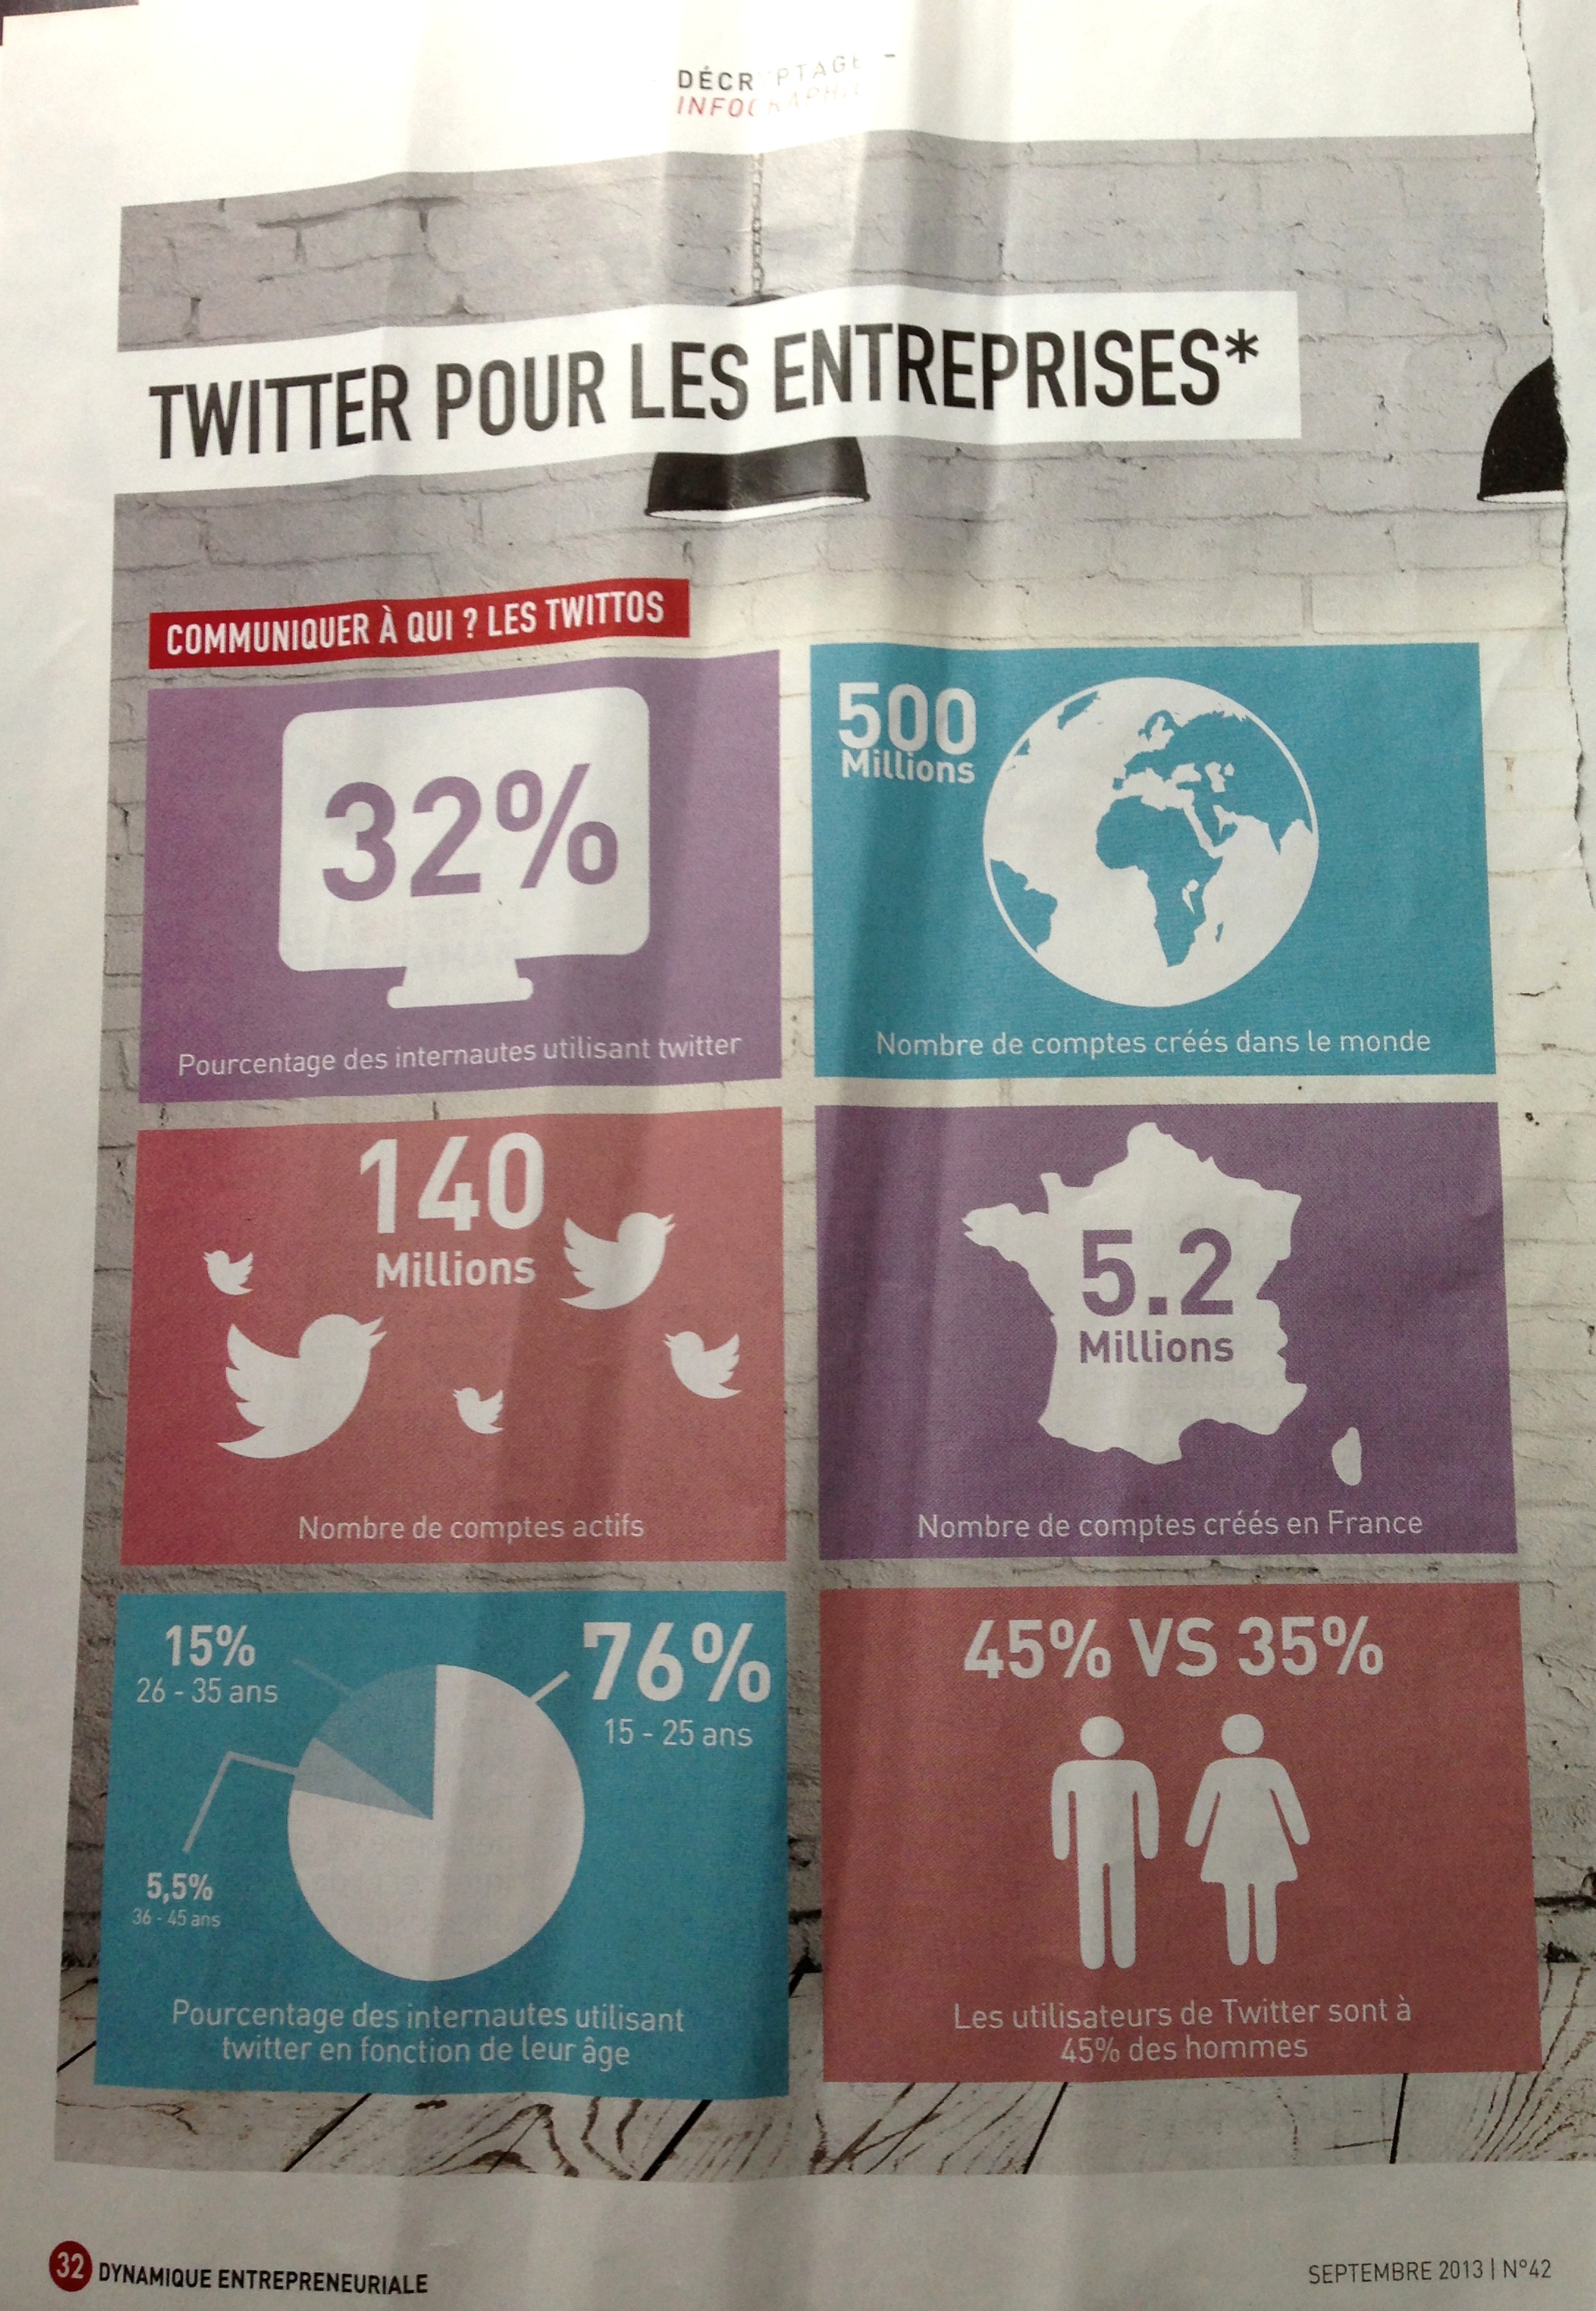 Dynamique Entrepreneuriale, Twitter pour les Entreprises, The Myndset digital marketing